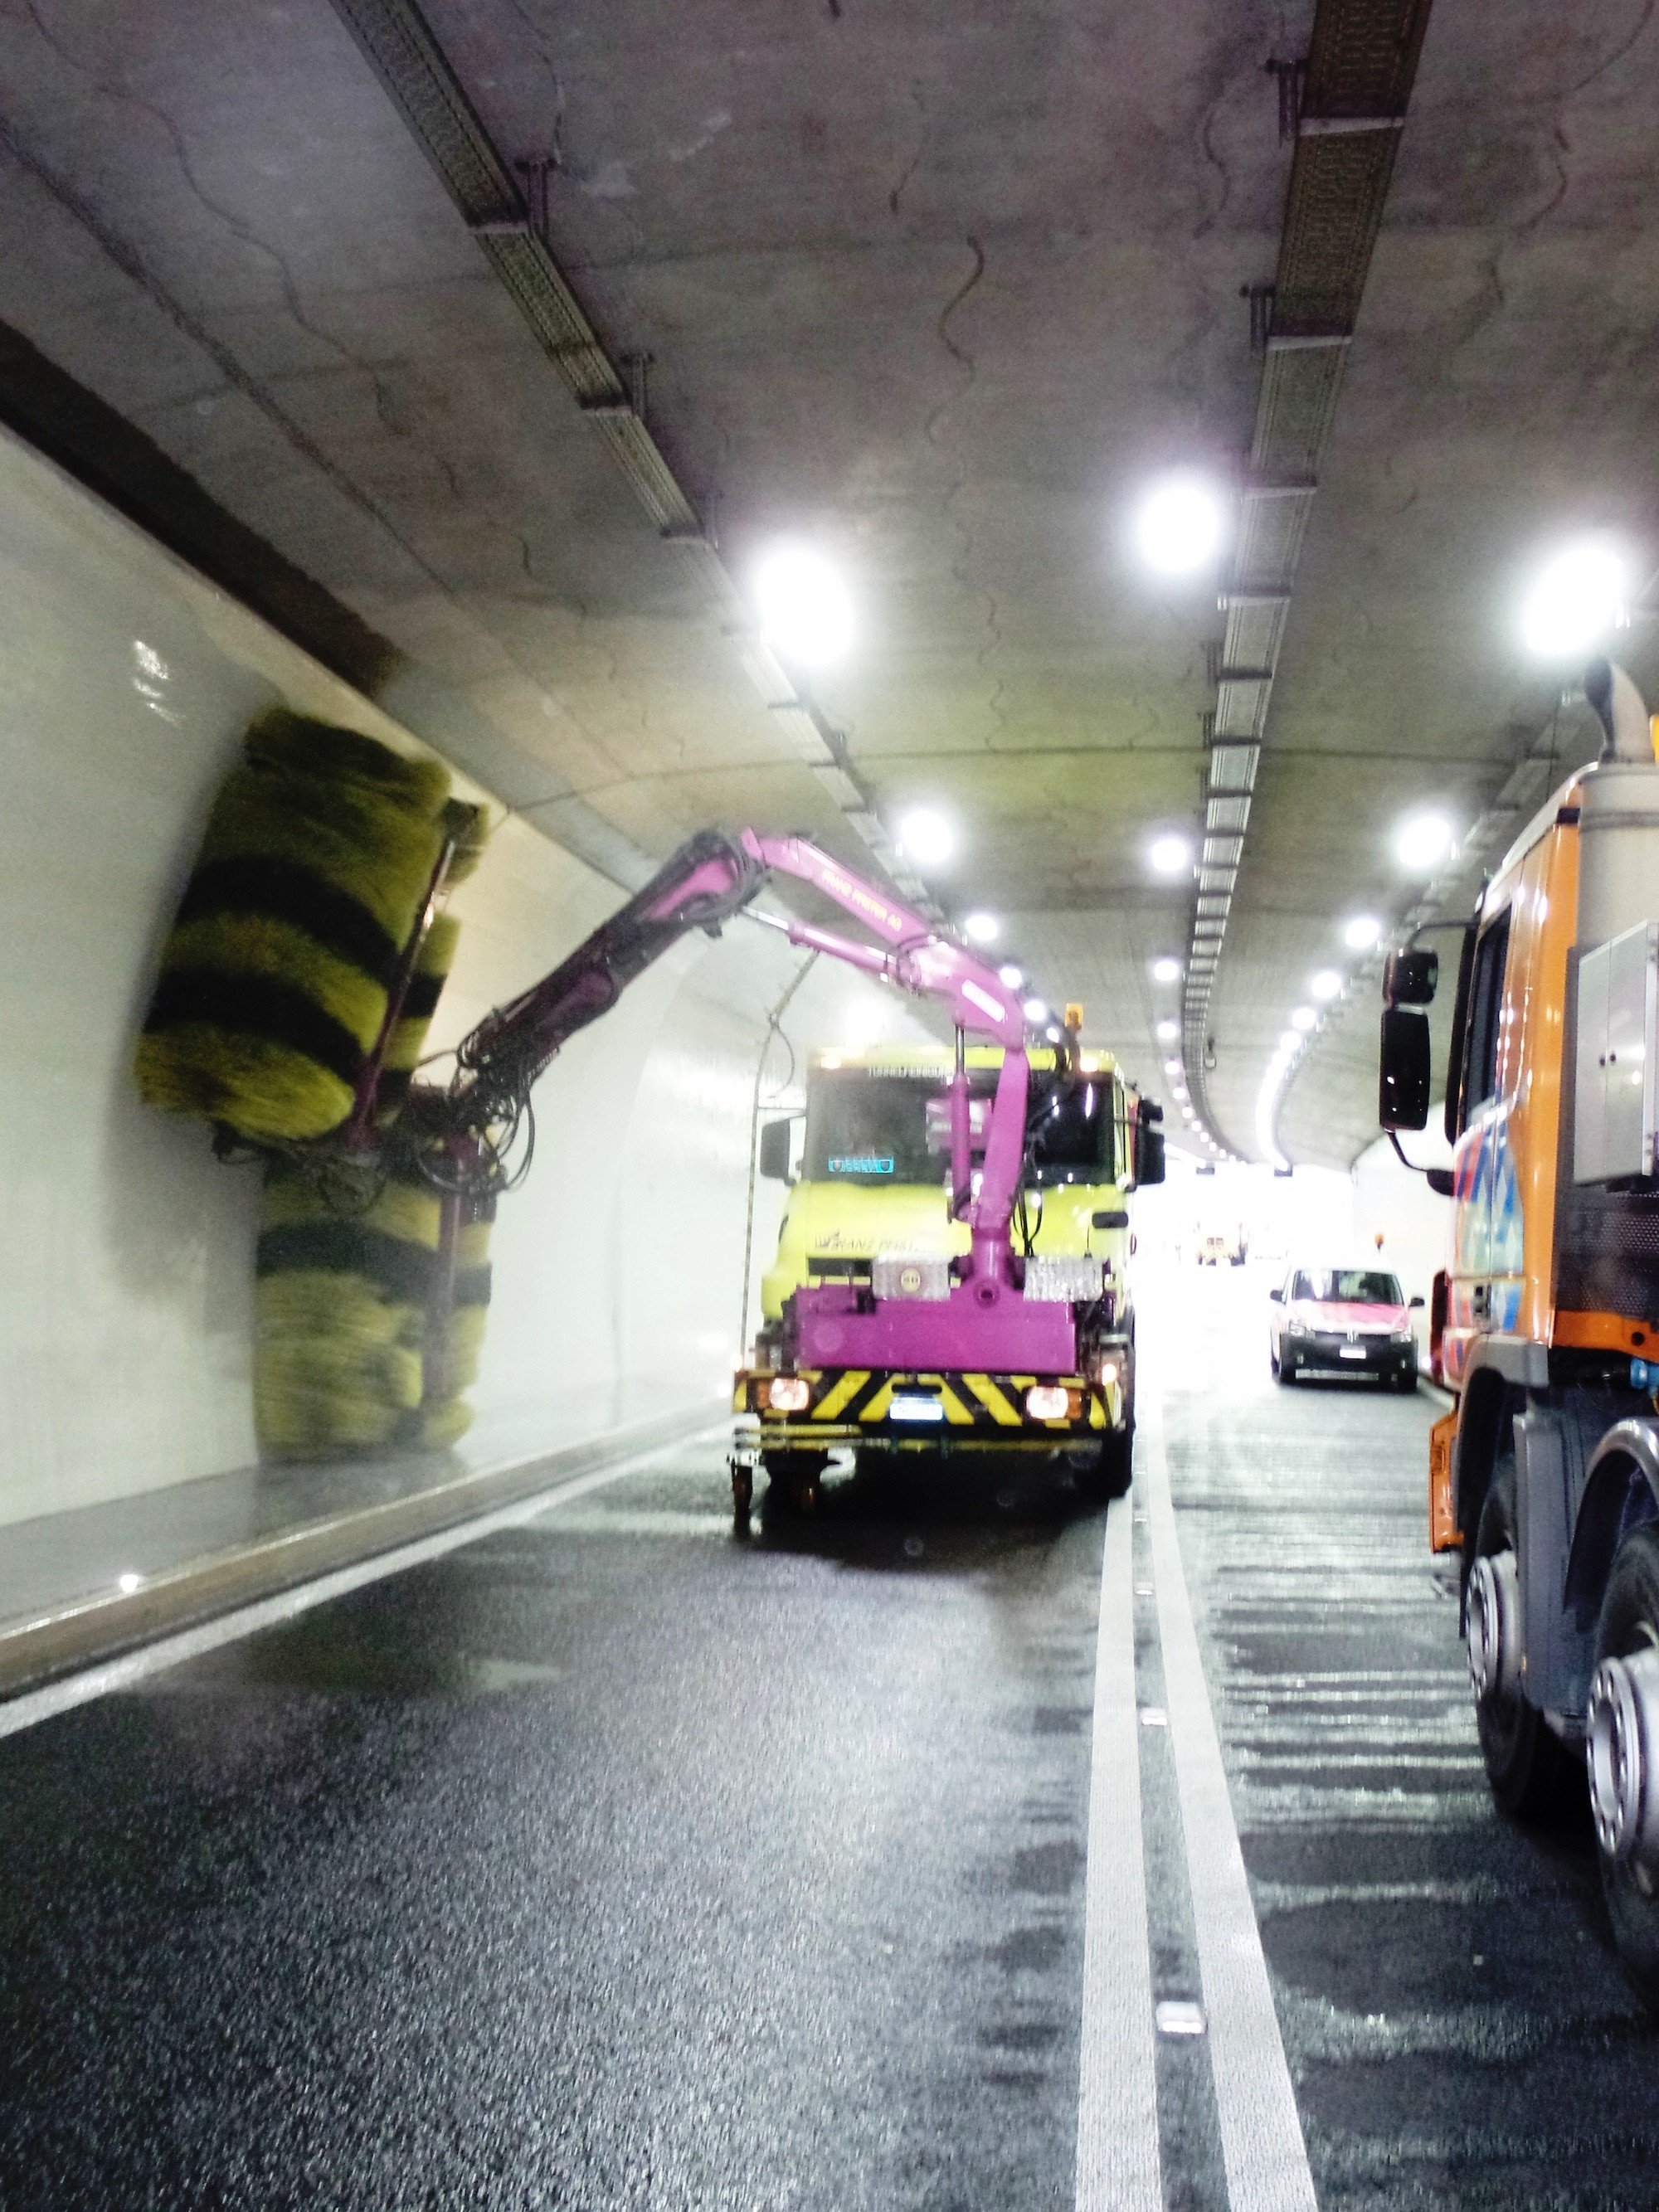 Tunnelreinigung – wie geht das?